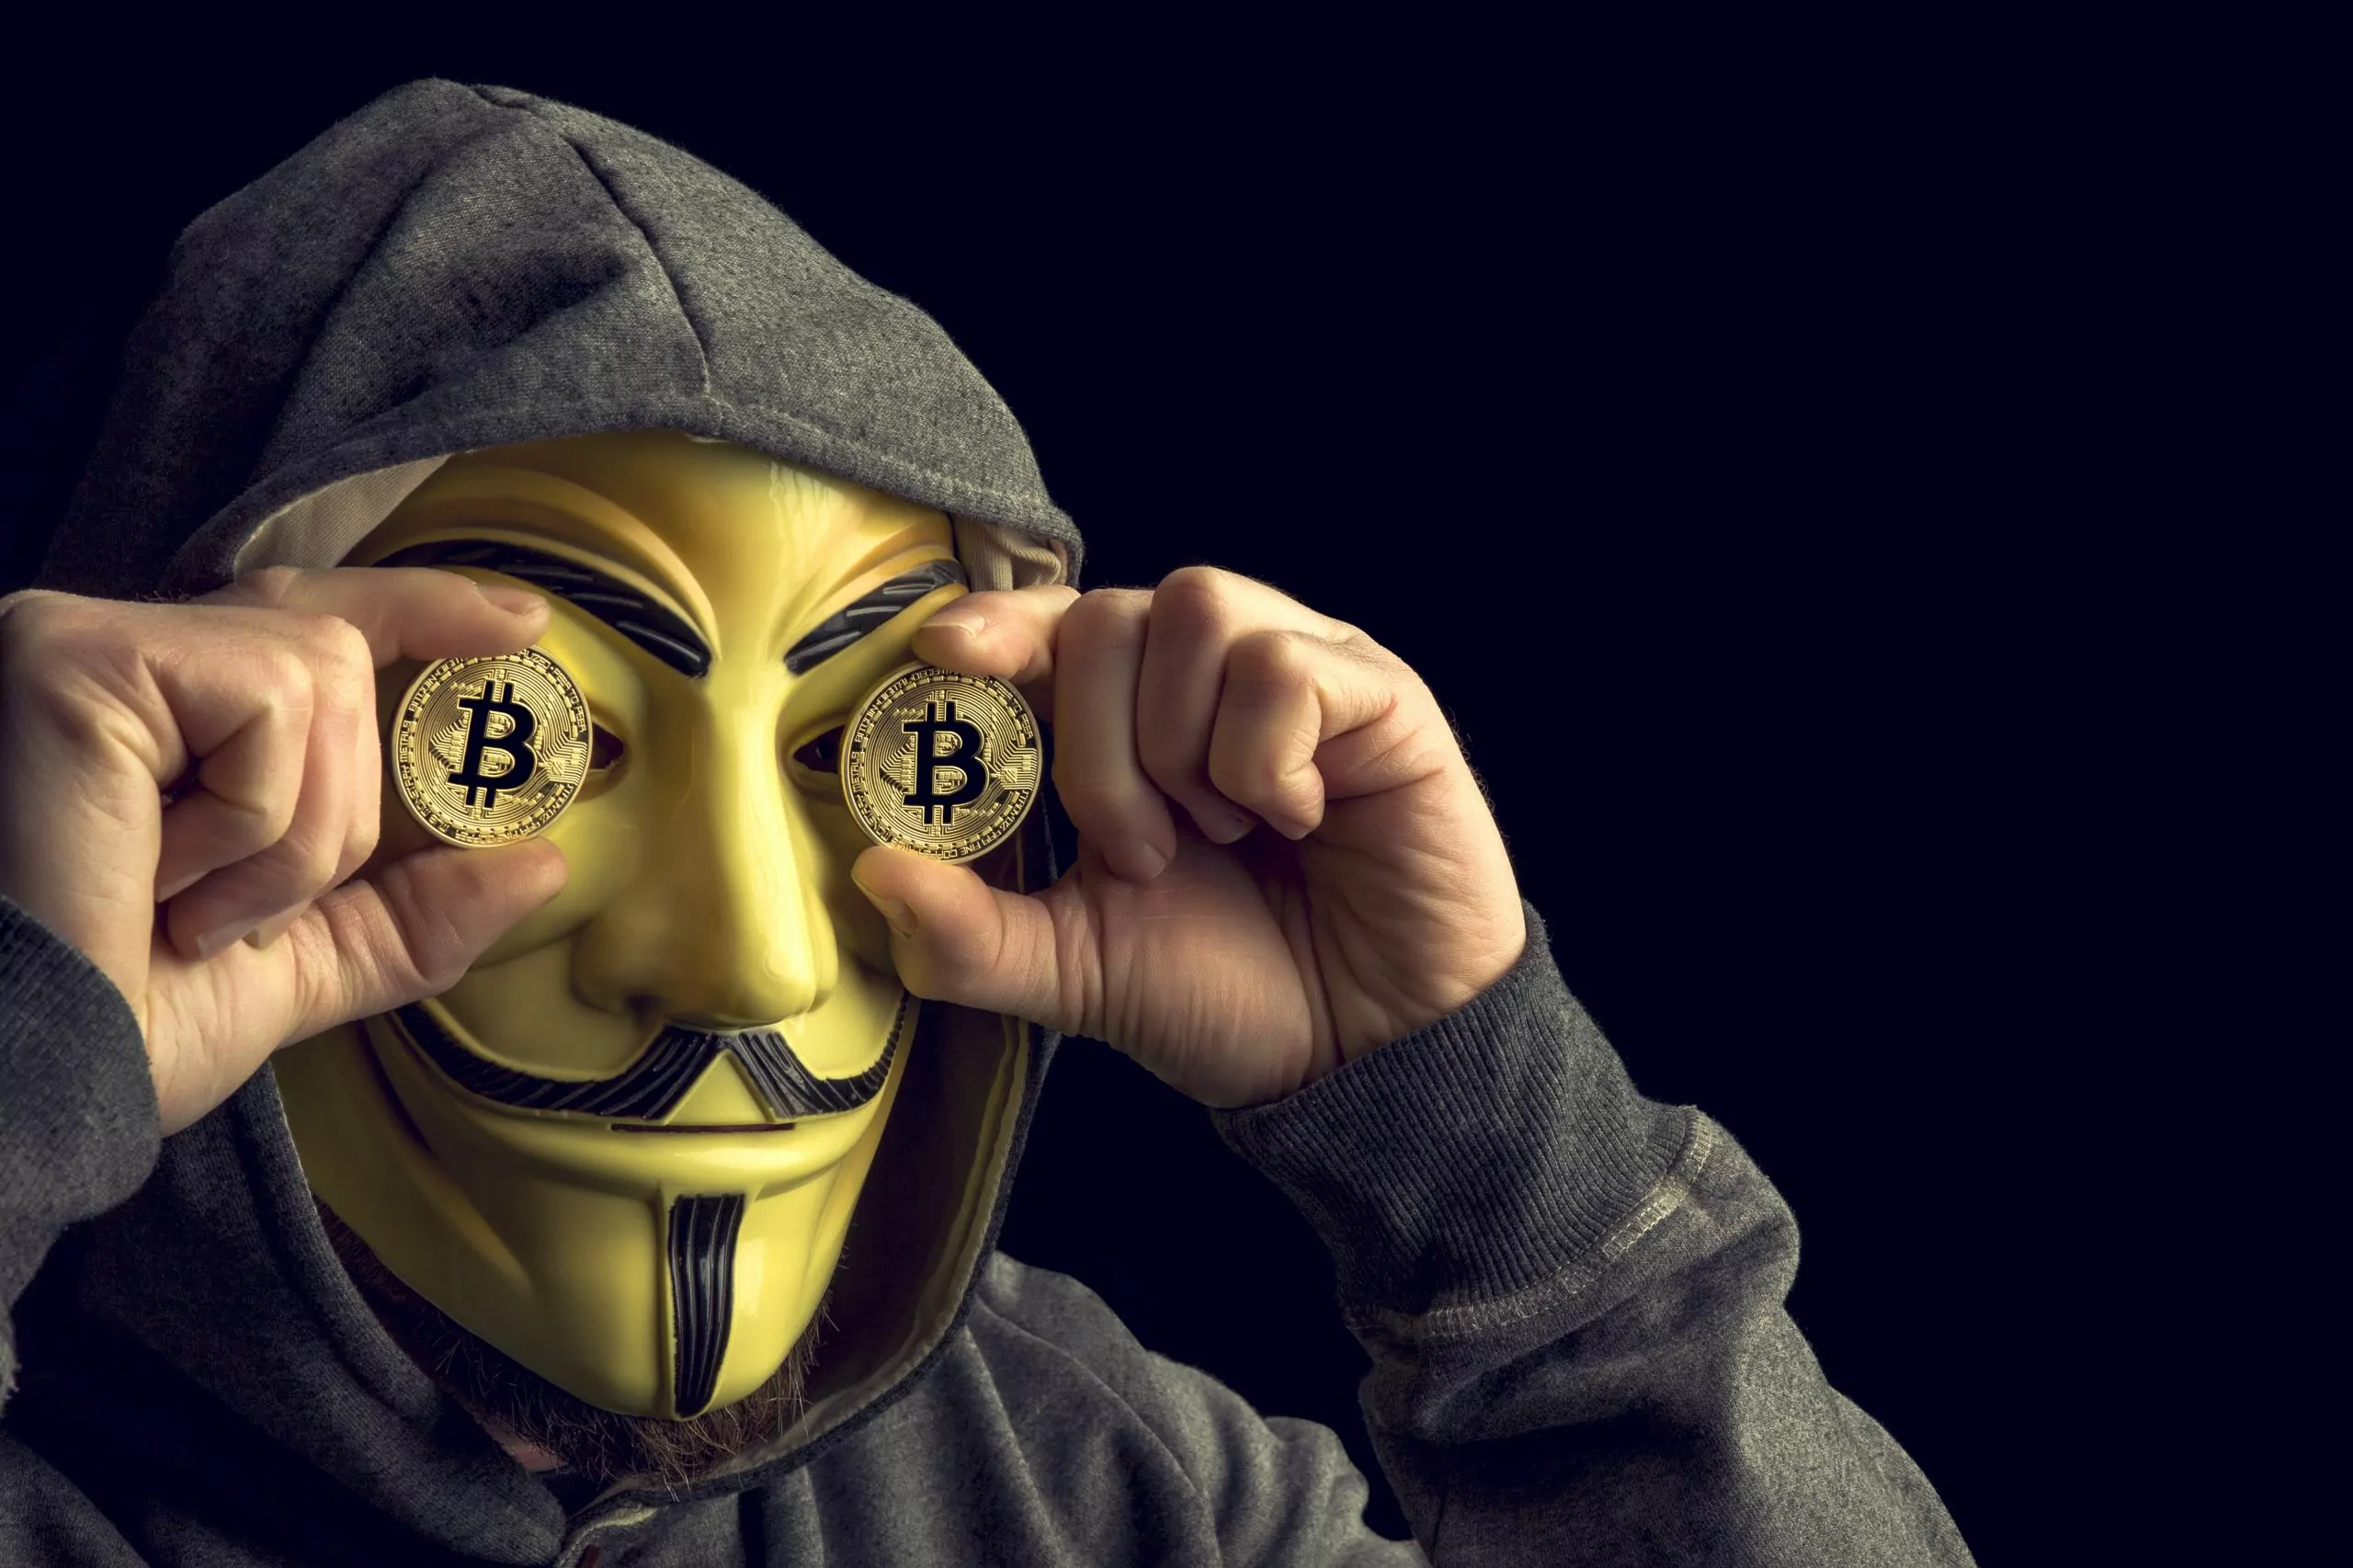 15 year old bitcoin hacker